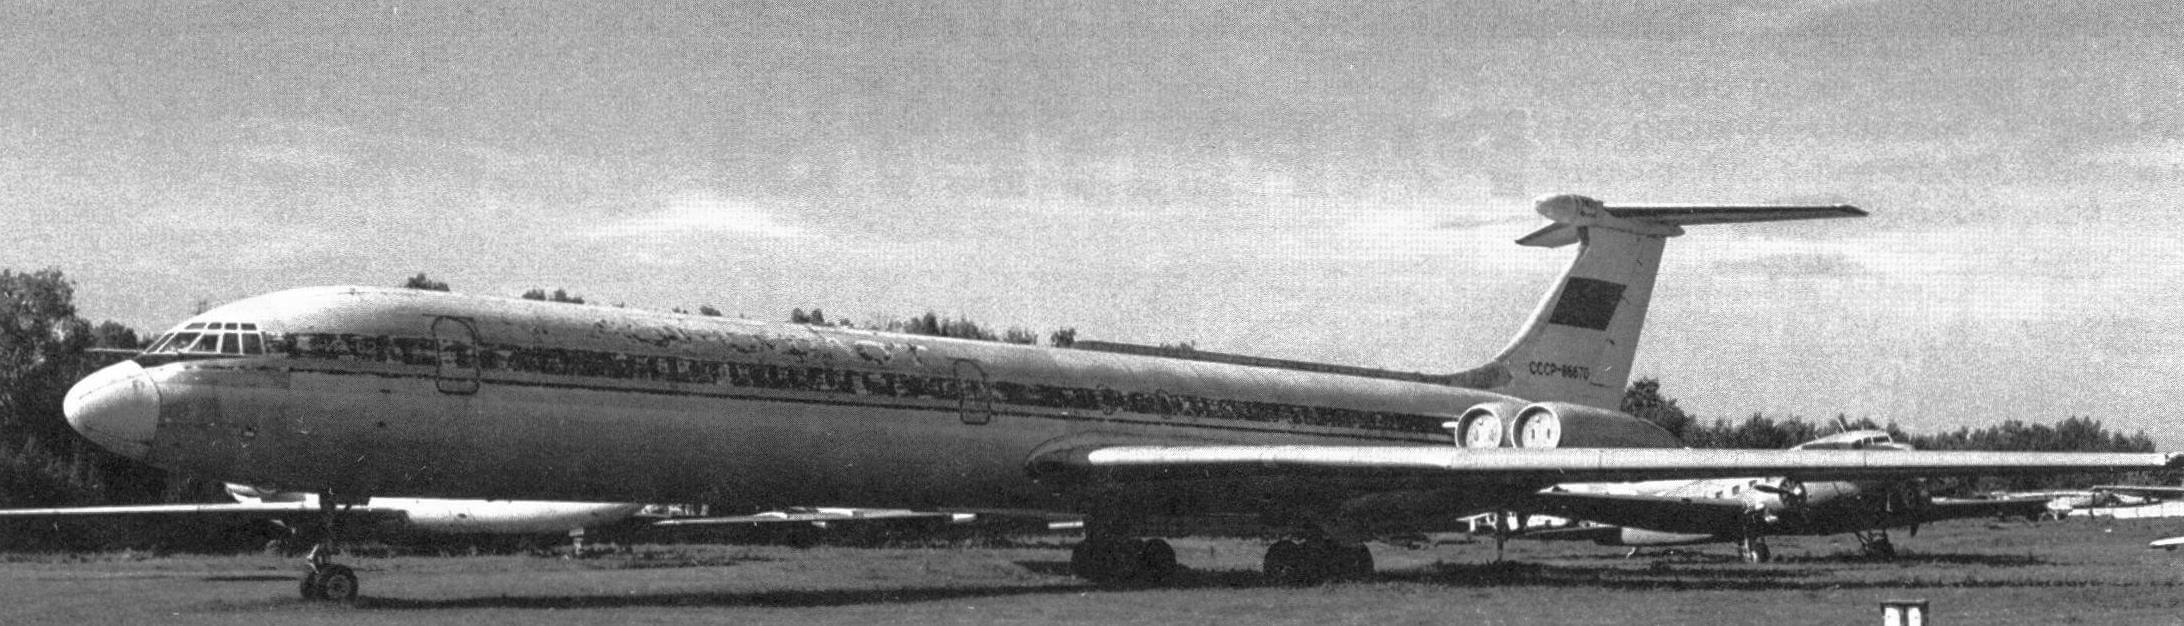 Ил-62 в авиационном музее в Монино